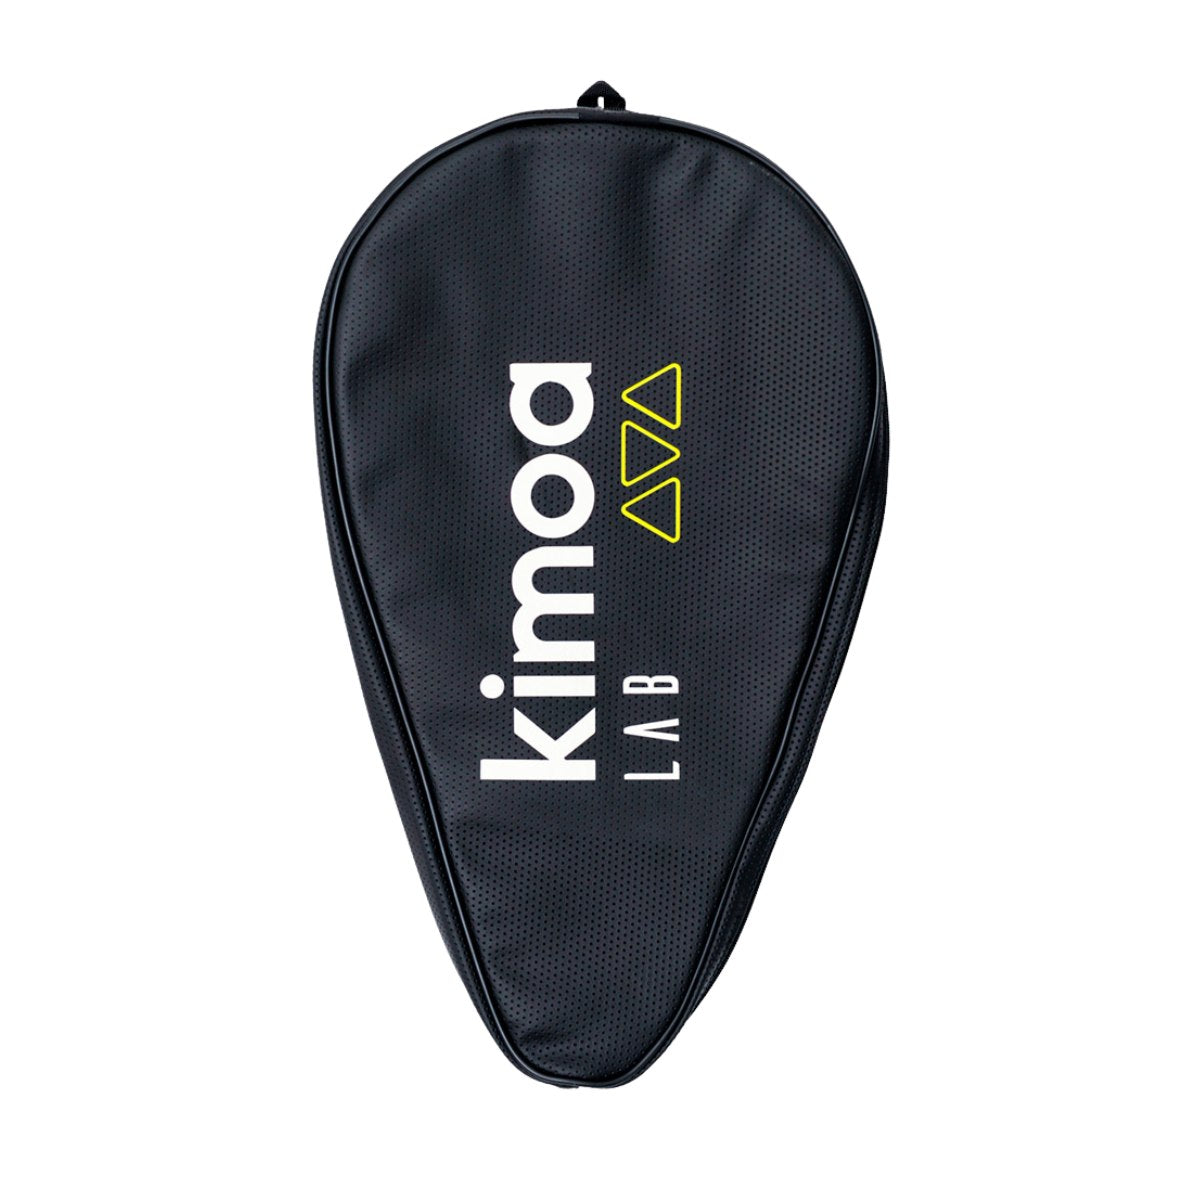 K-STB CARBON PRO 1.0 x KIMOA - Kimoa - Fueler store